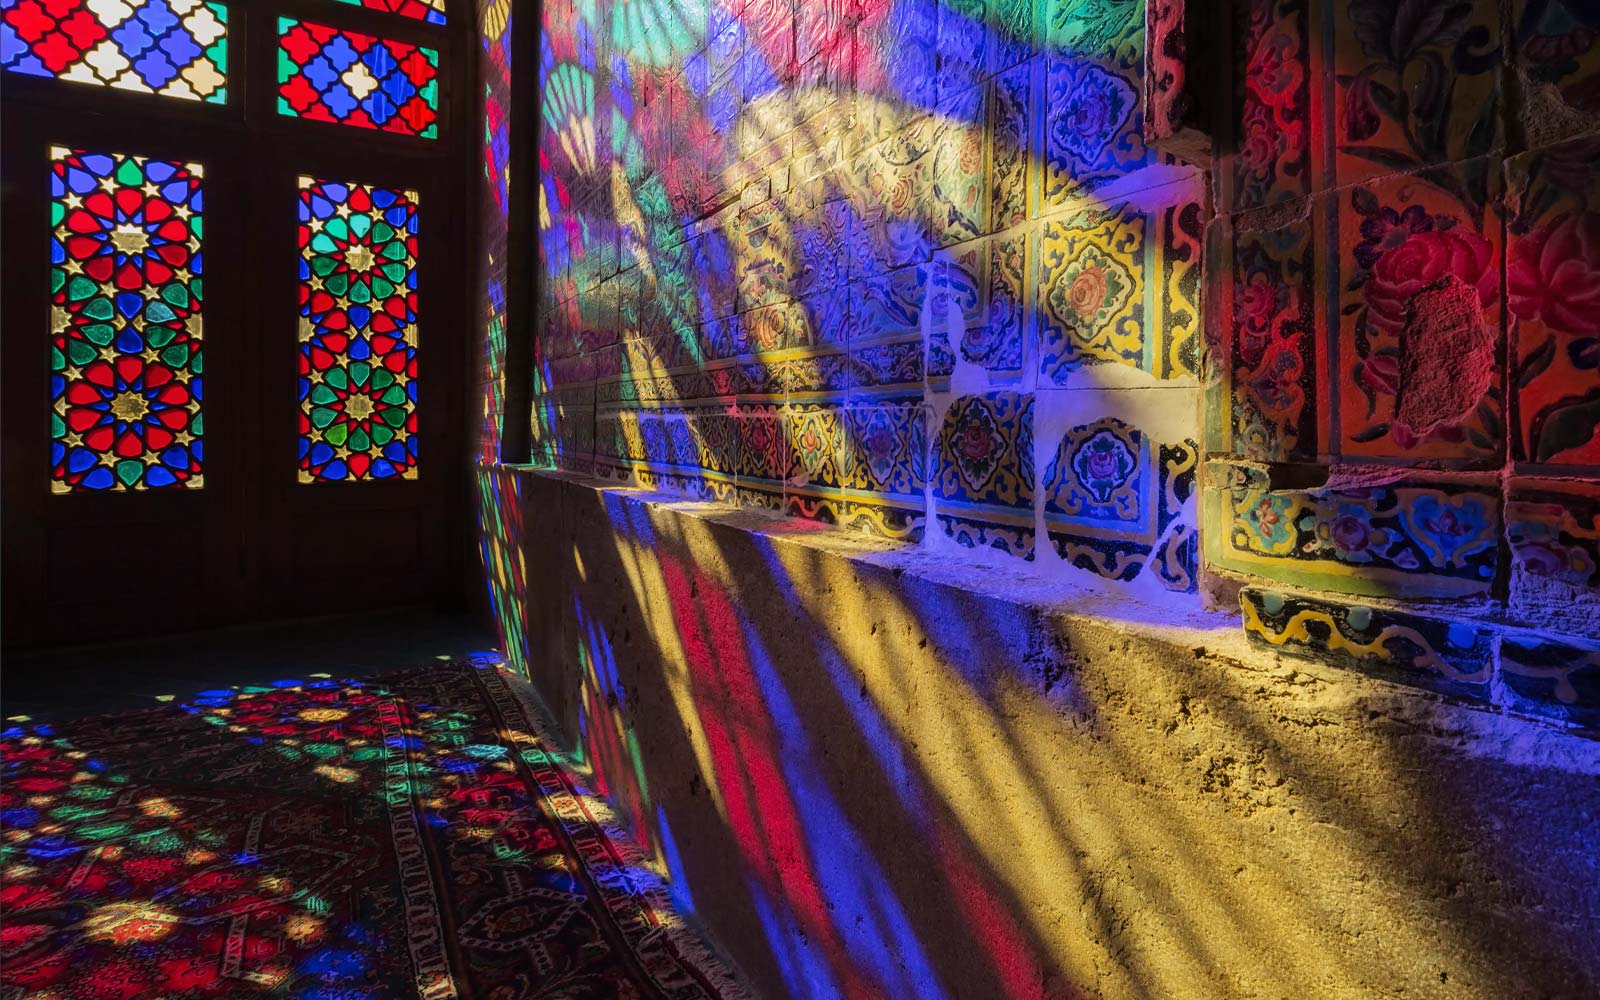 Una scena di luce che filtra attraverso il vetro colorato e proietta i colori sulla parete (riproduci video).